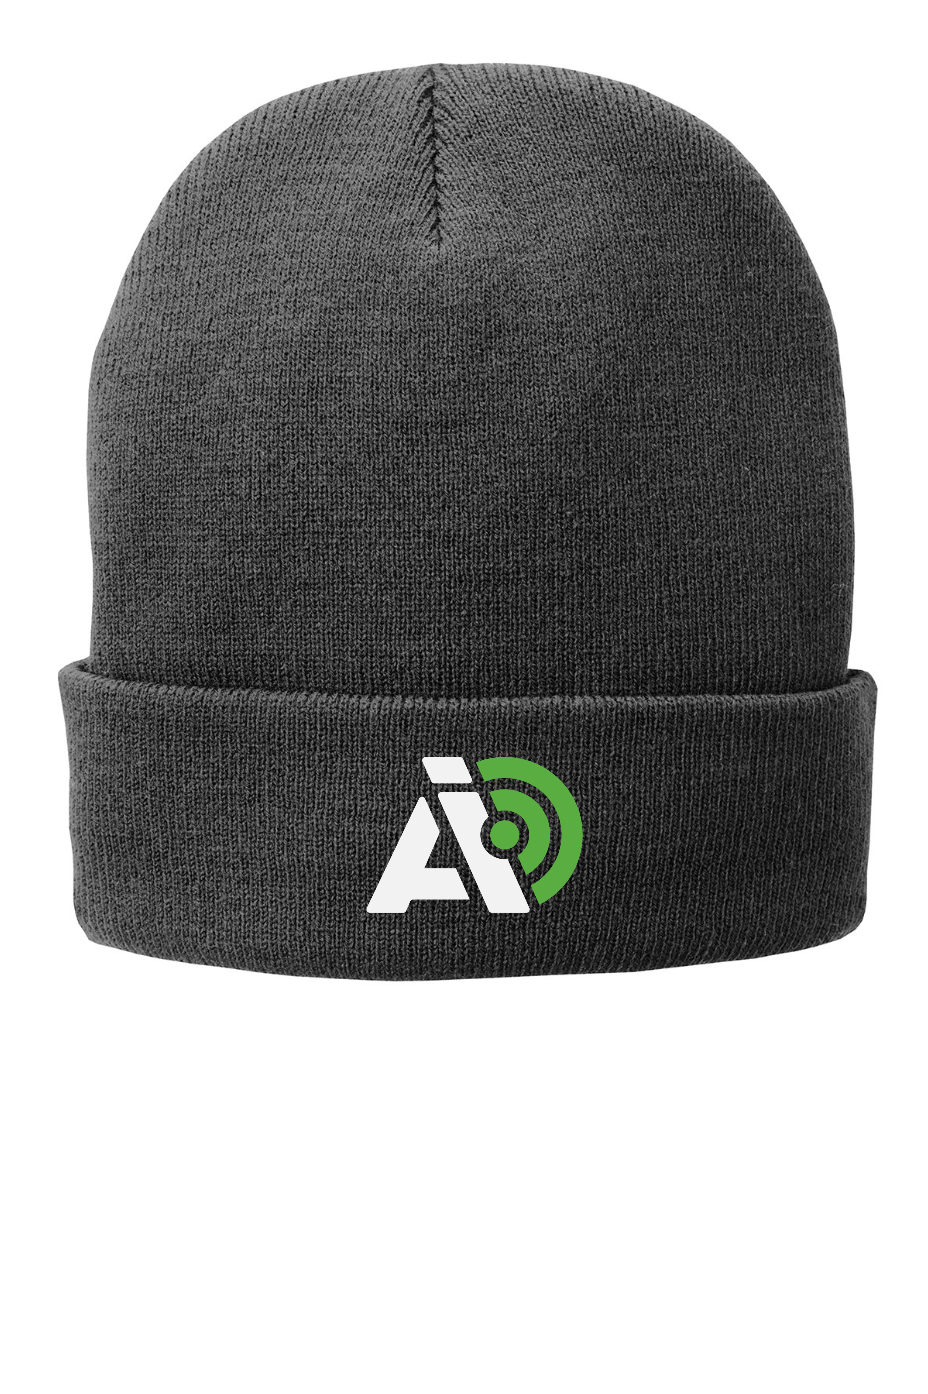 AIO Standard Knit Cap